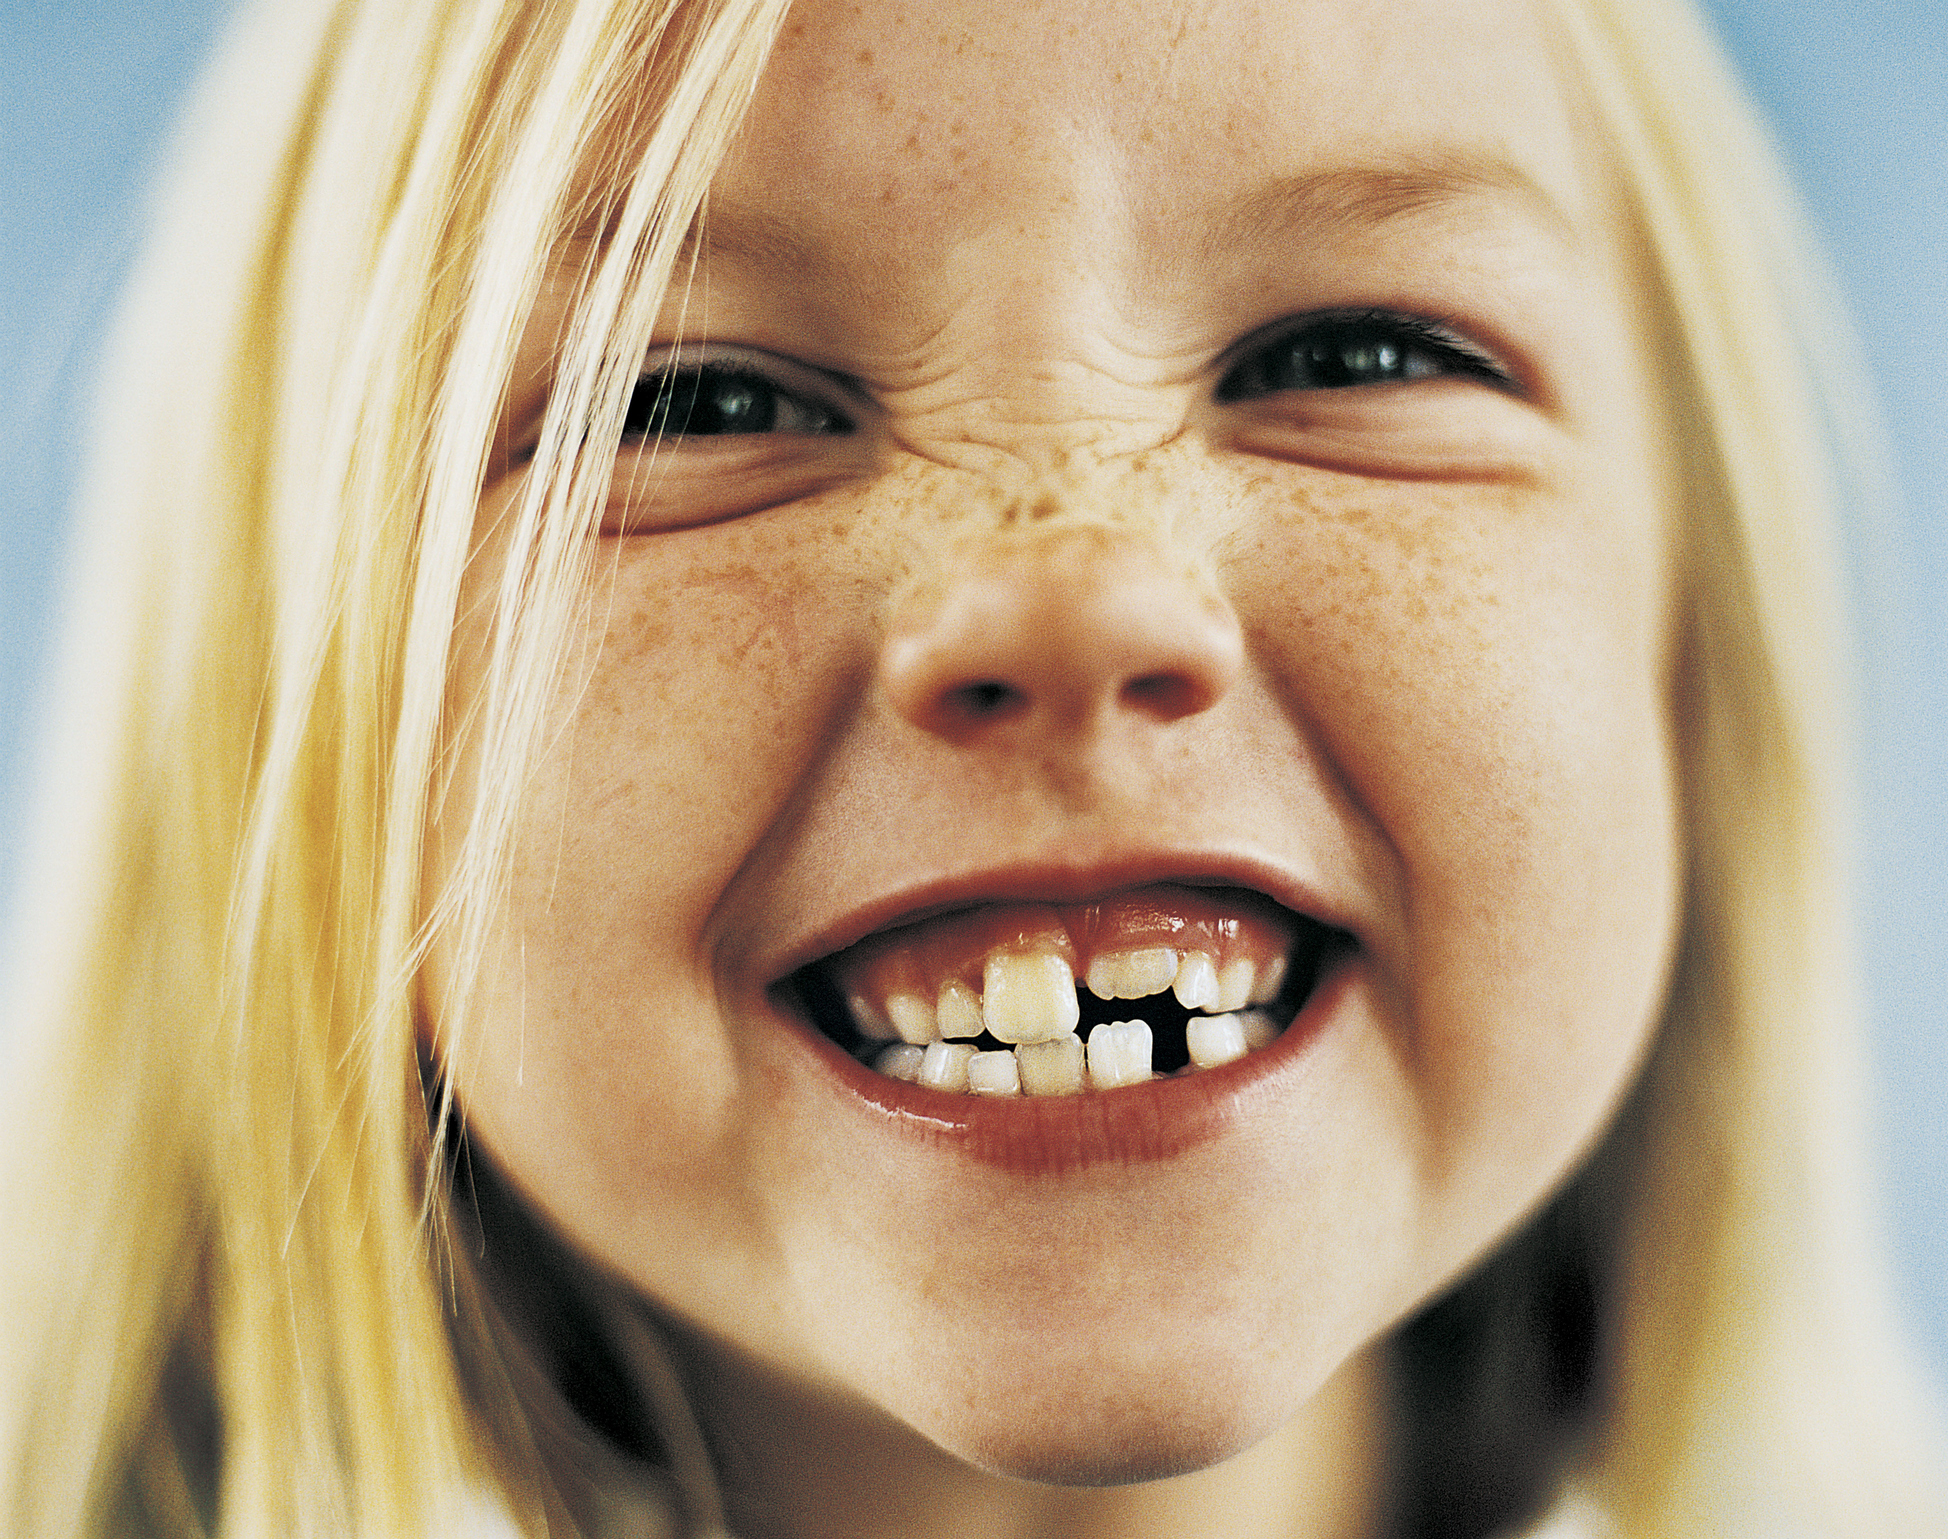 Зъби: Сънища със зъби са много чести. Повечето сънища за зъби символизират стареене. Изваждане на зъб символизира нещо, което трябва да излезе, докато развалените зъби символизират емоции на страх и тревога.